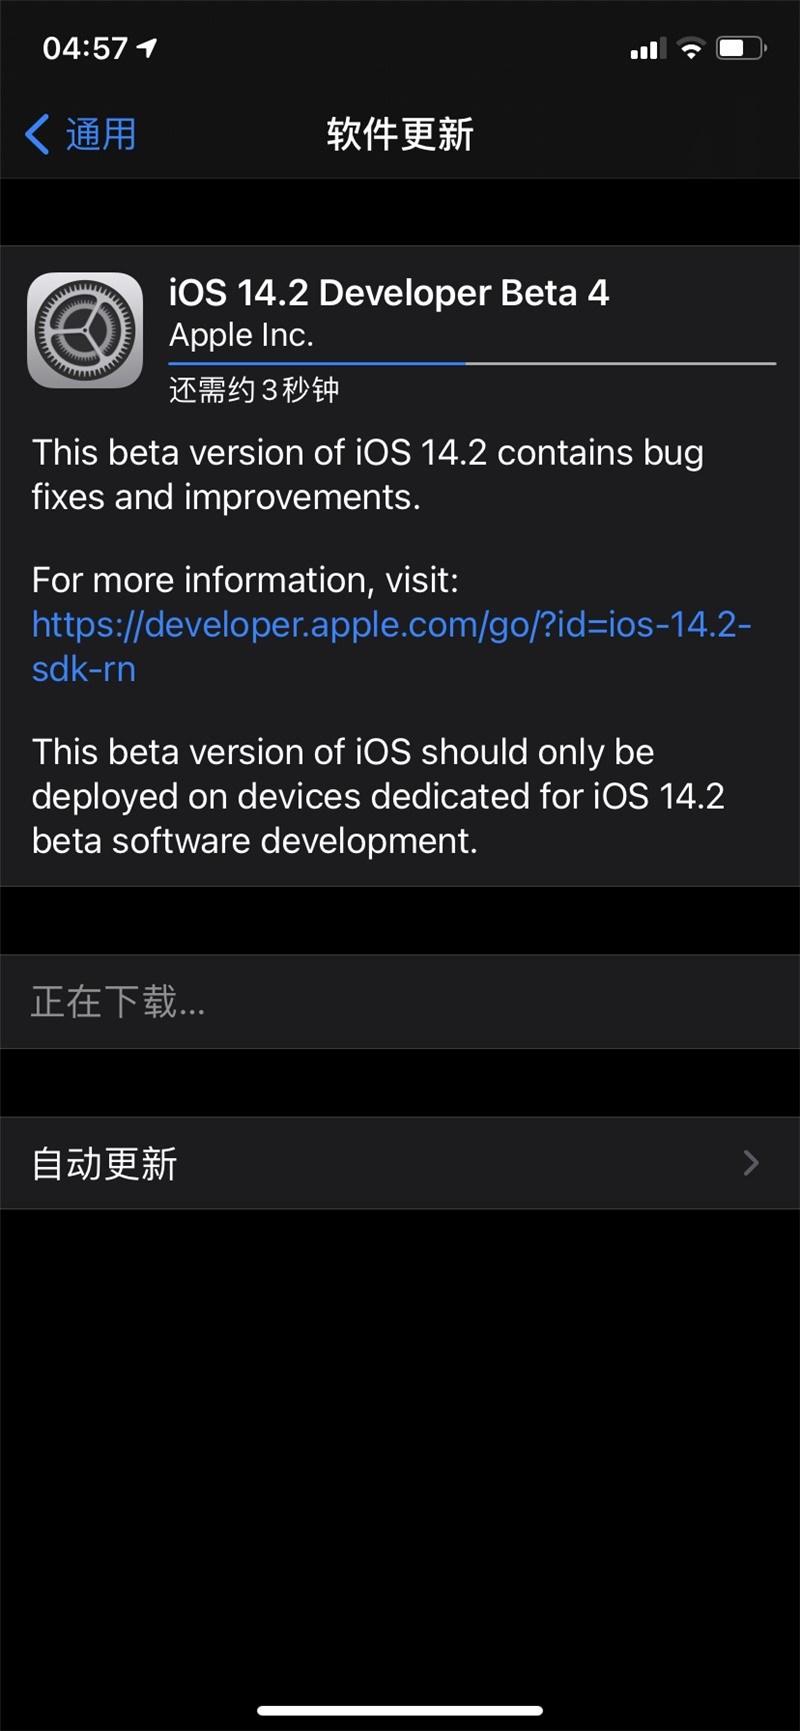 苹果发布 iOS 与 iPadOS 14.2 开发者测试版 beta 4，带来全新壁纸